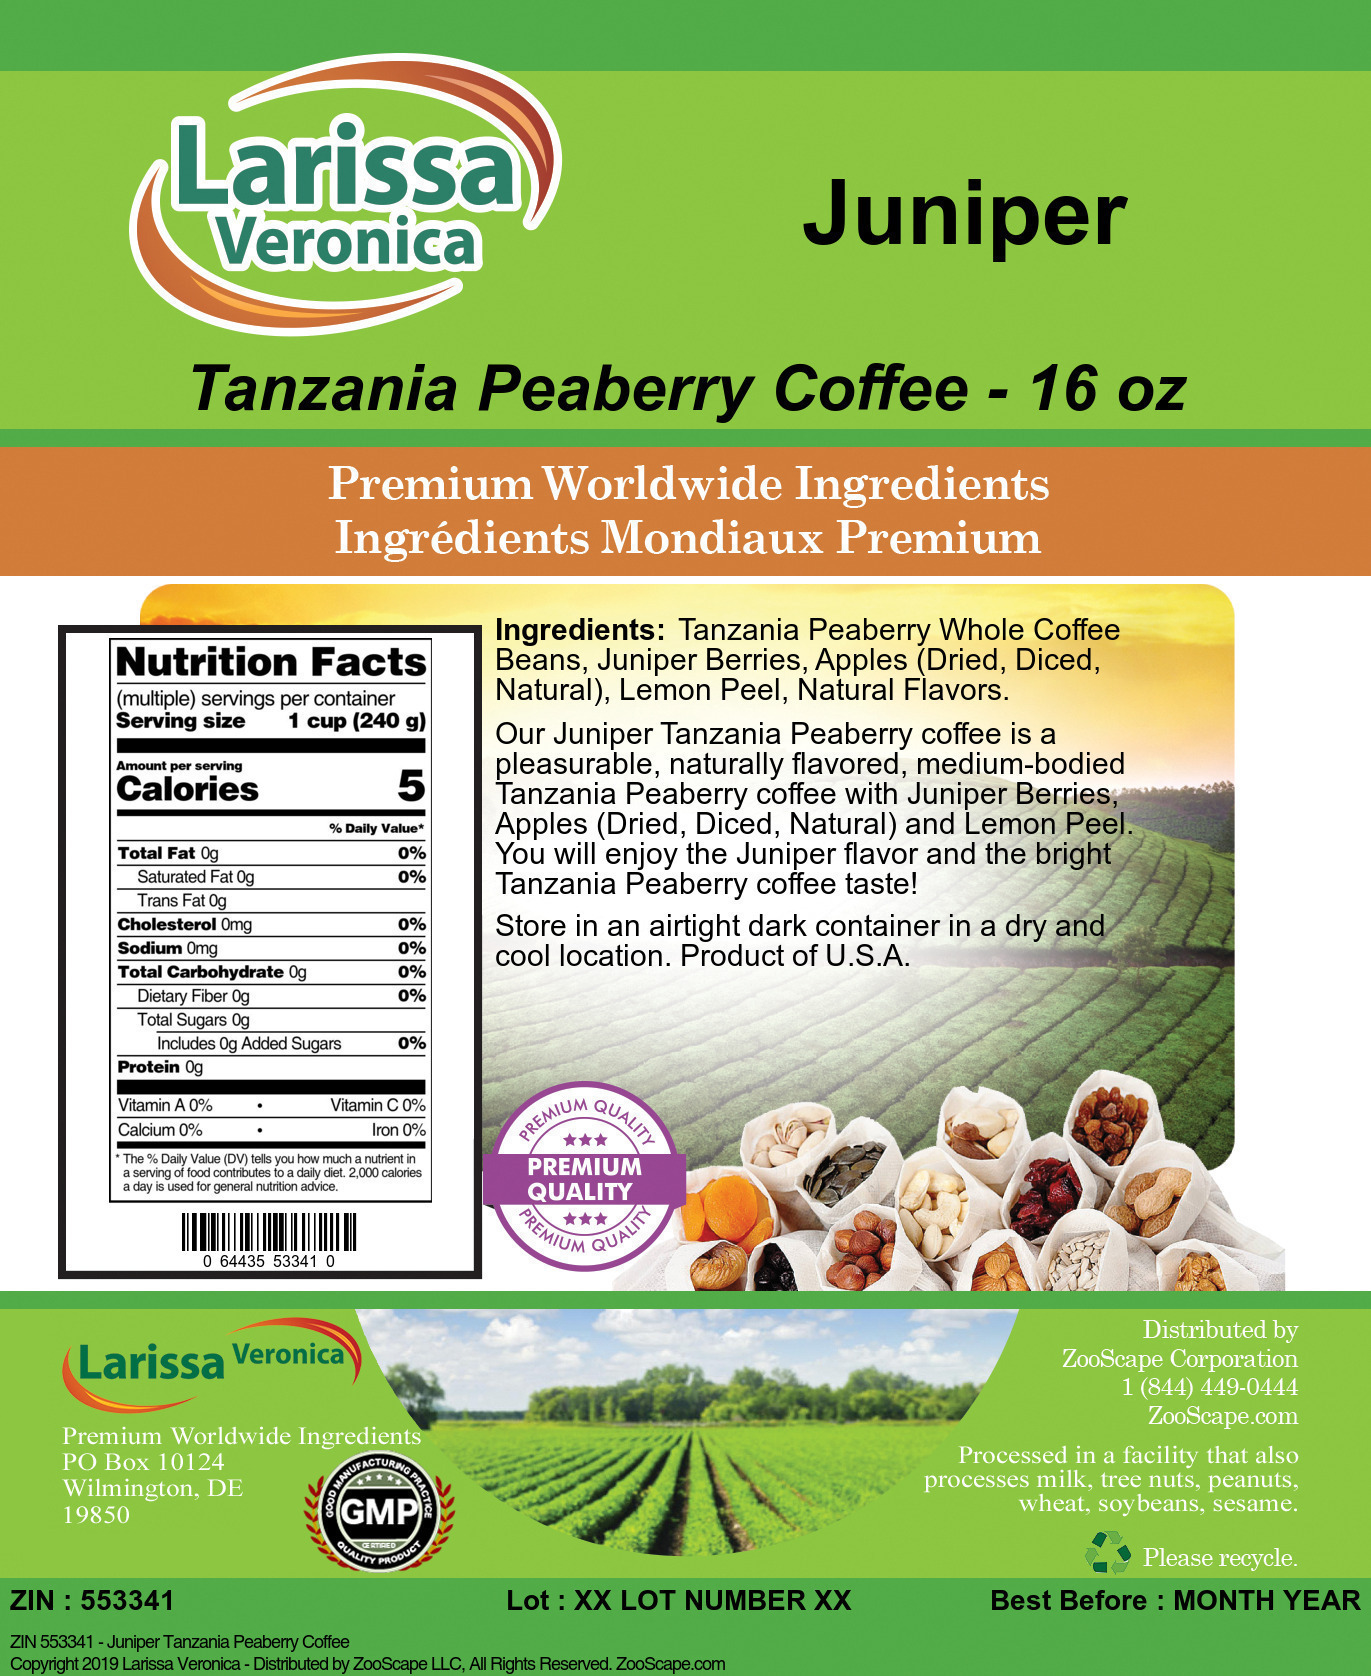 Juniper Tanzania Peaberry Coffee - Label